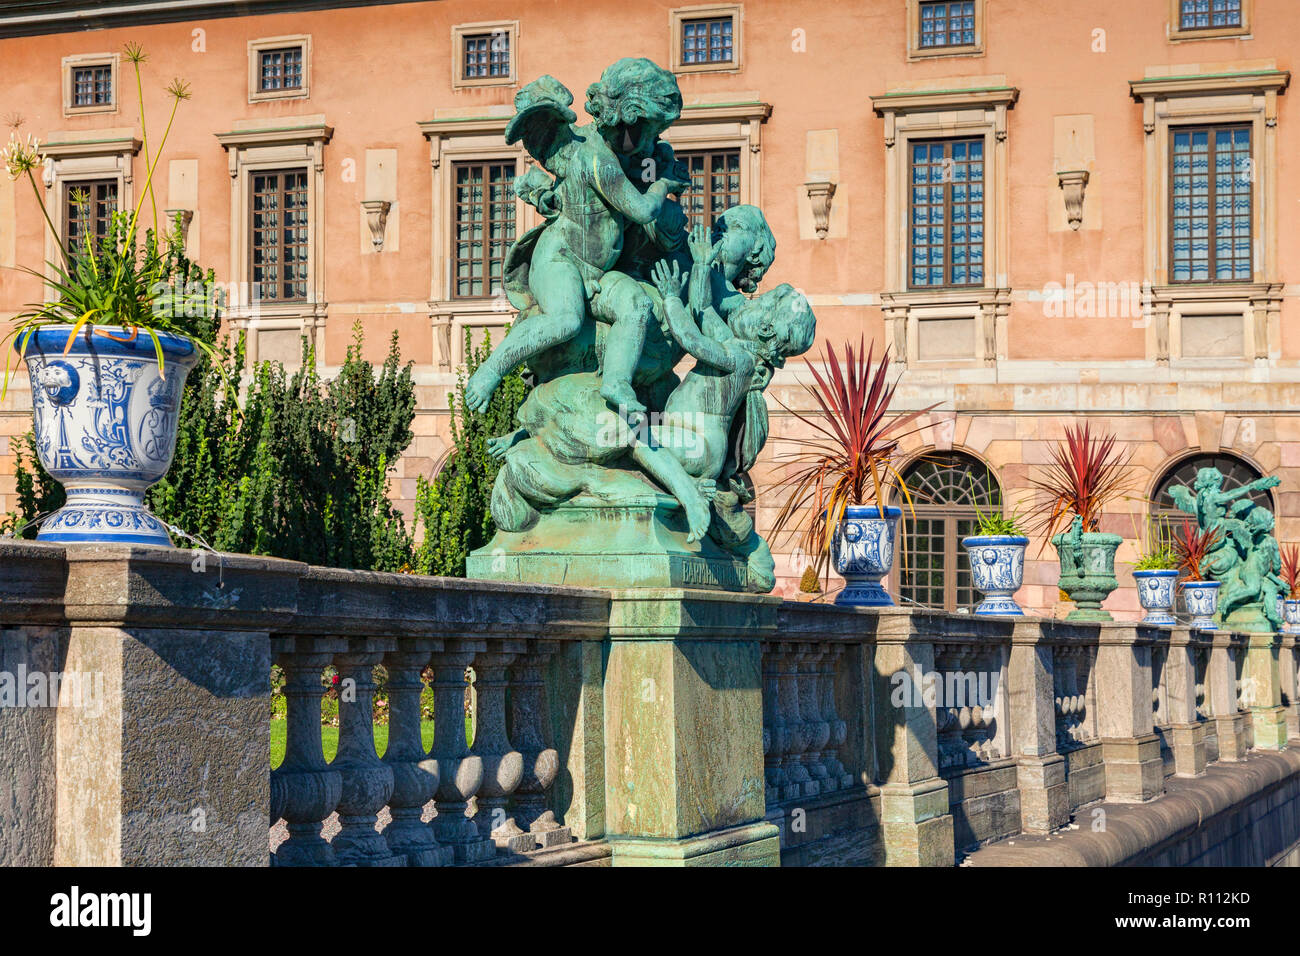 16 Septembre 2018 : Stockholm, Suède - Détail de balustrade à Palais Royal, avec urnes plein de plantes et d'un chérubin, la sculpture. Banque D'Images